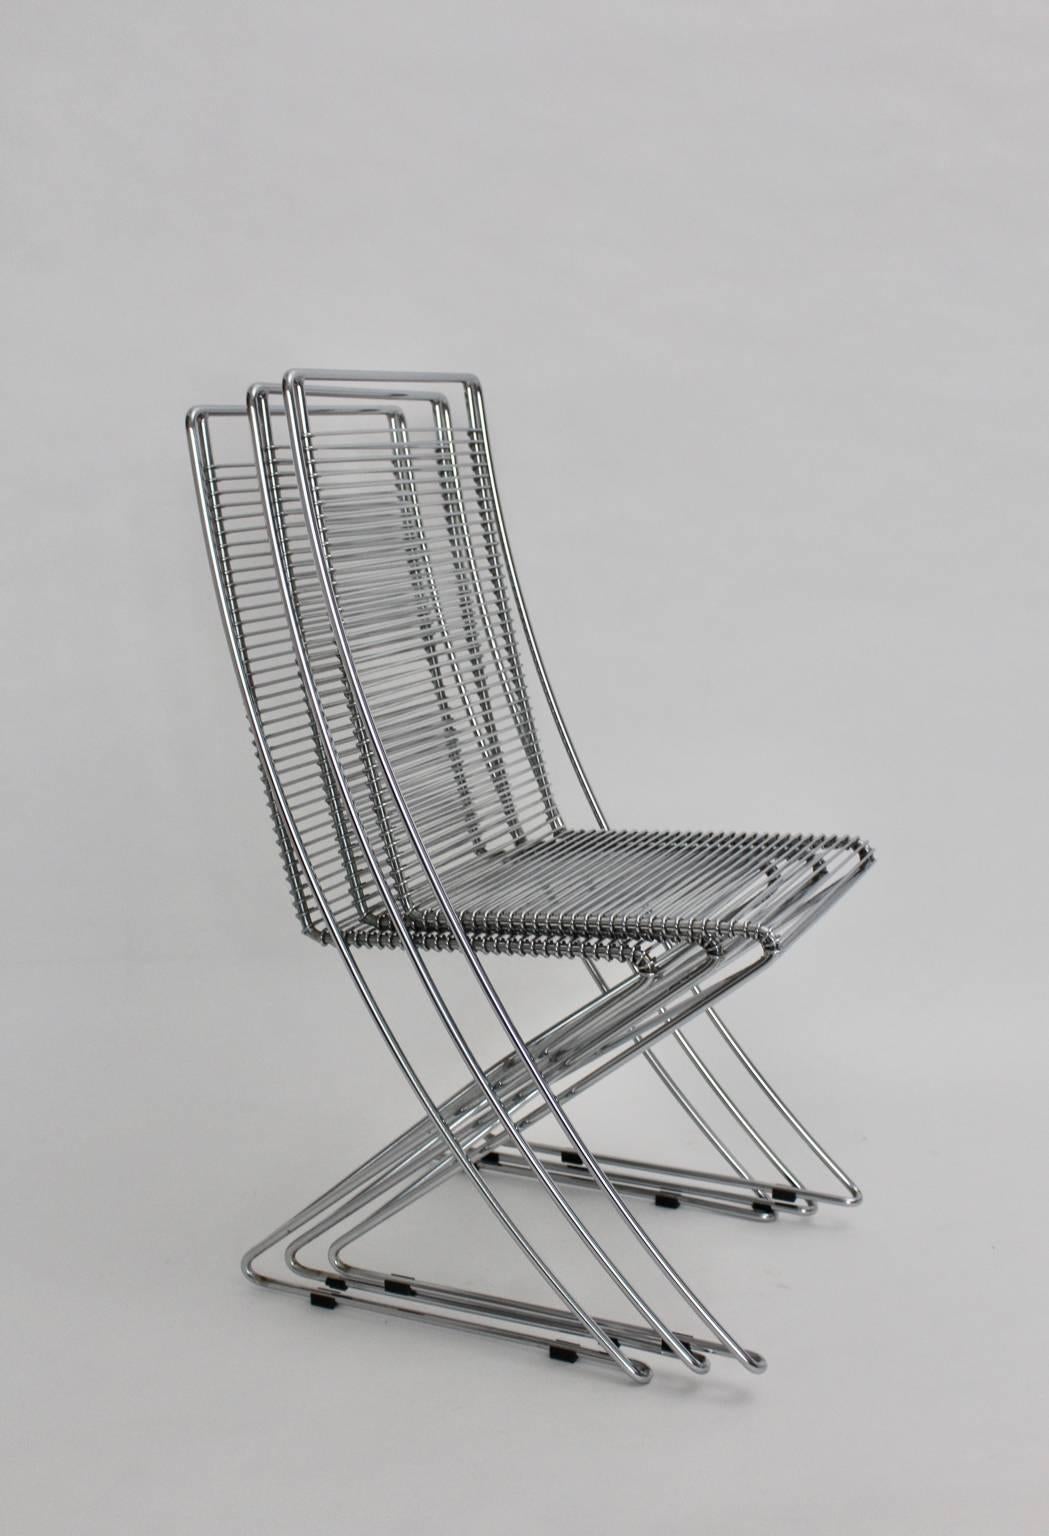 Verchromte Stahldraht-Vintage-Stühle Kreuzschwinger von Till Behrens, 1983, Deutschland (Ende des 20. Jahrhunderts)